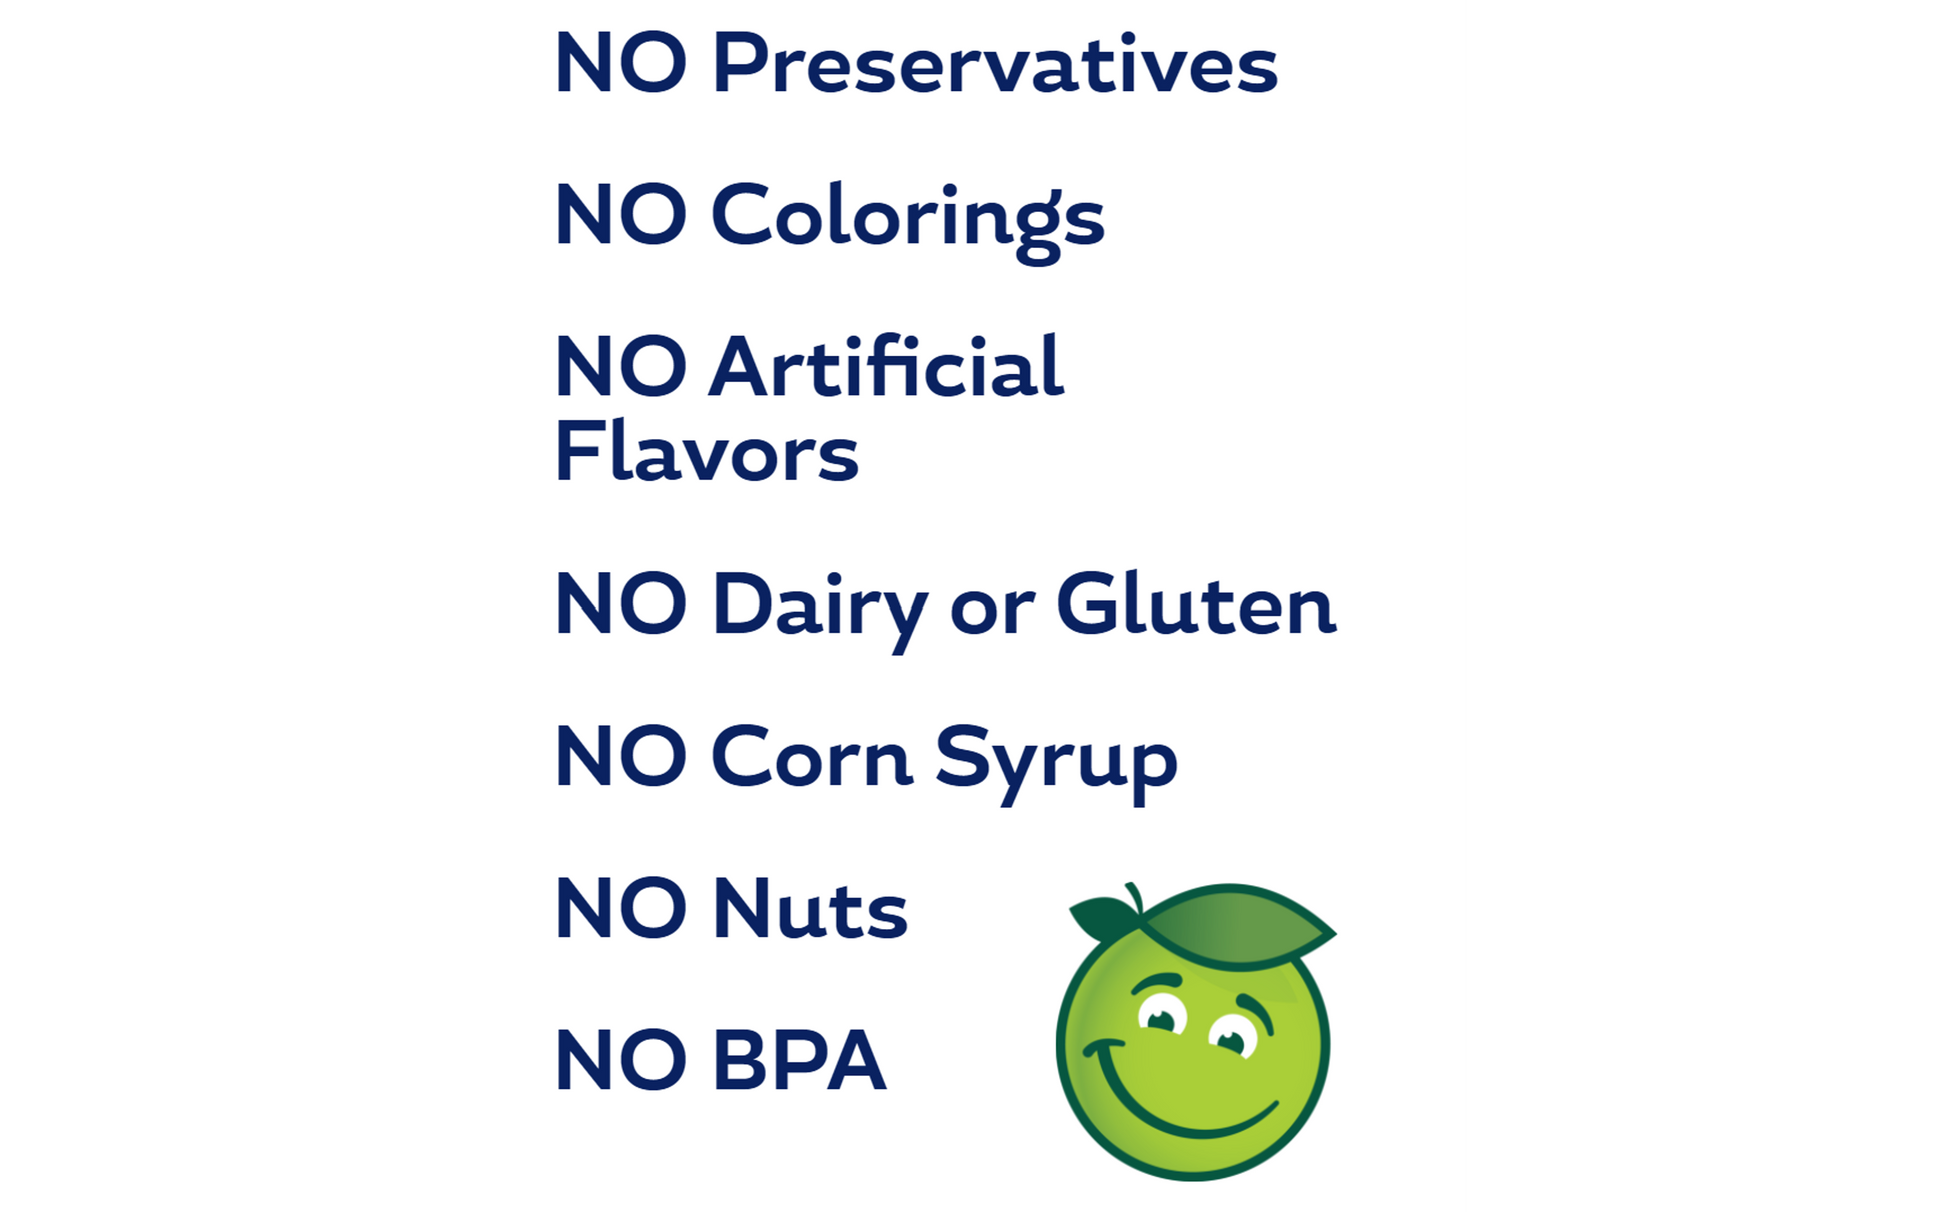 Buddy Fruits Apple & Cinnamon fruit pouch has no preservatives, no colorings, no artificial flavors, no dairy, no gluten, no corn syrup, no nuts, & no BPA.